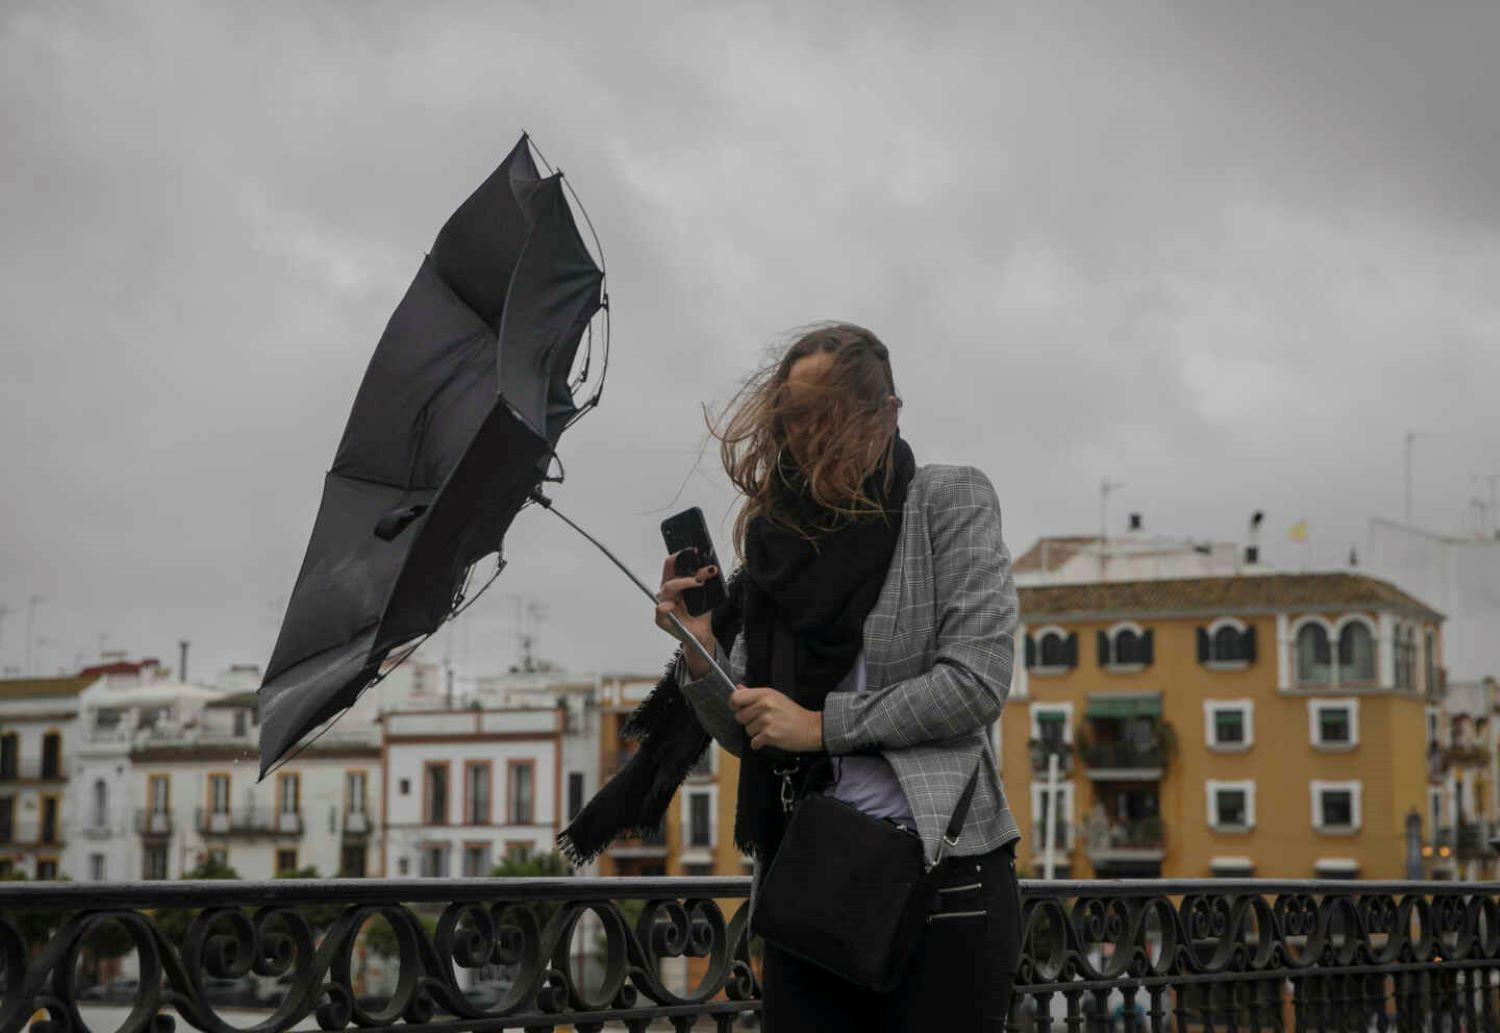 Una persona sujeta el paraguas ante las fuertes rachas de viento / EUROPA PRESS